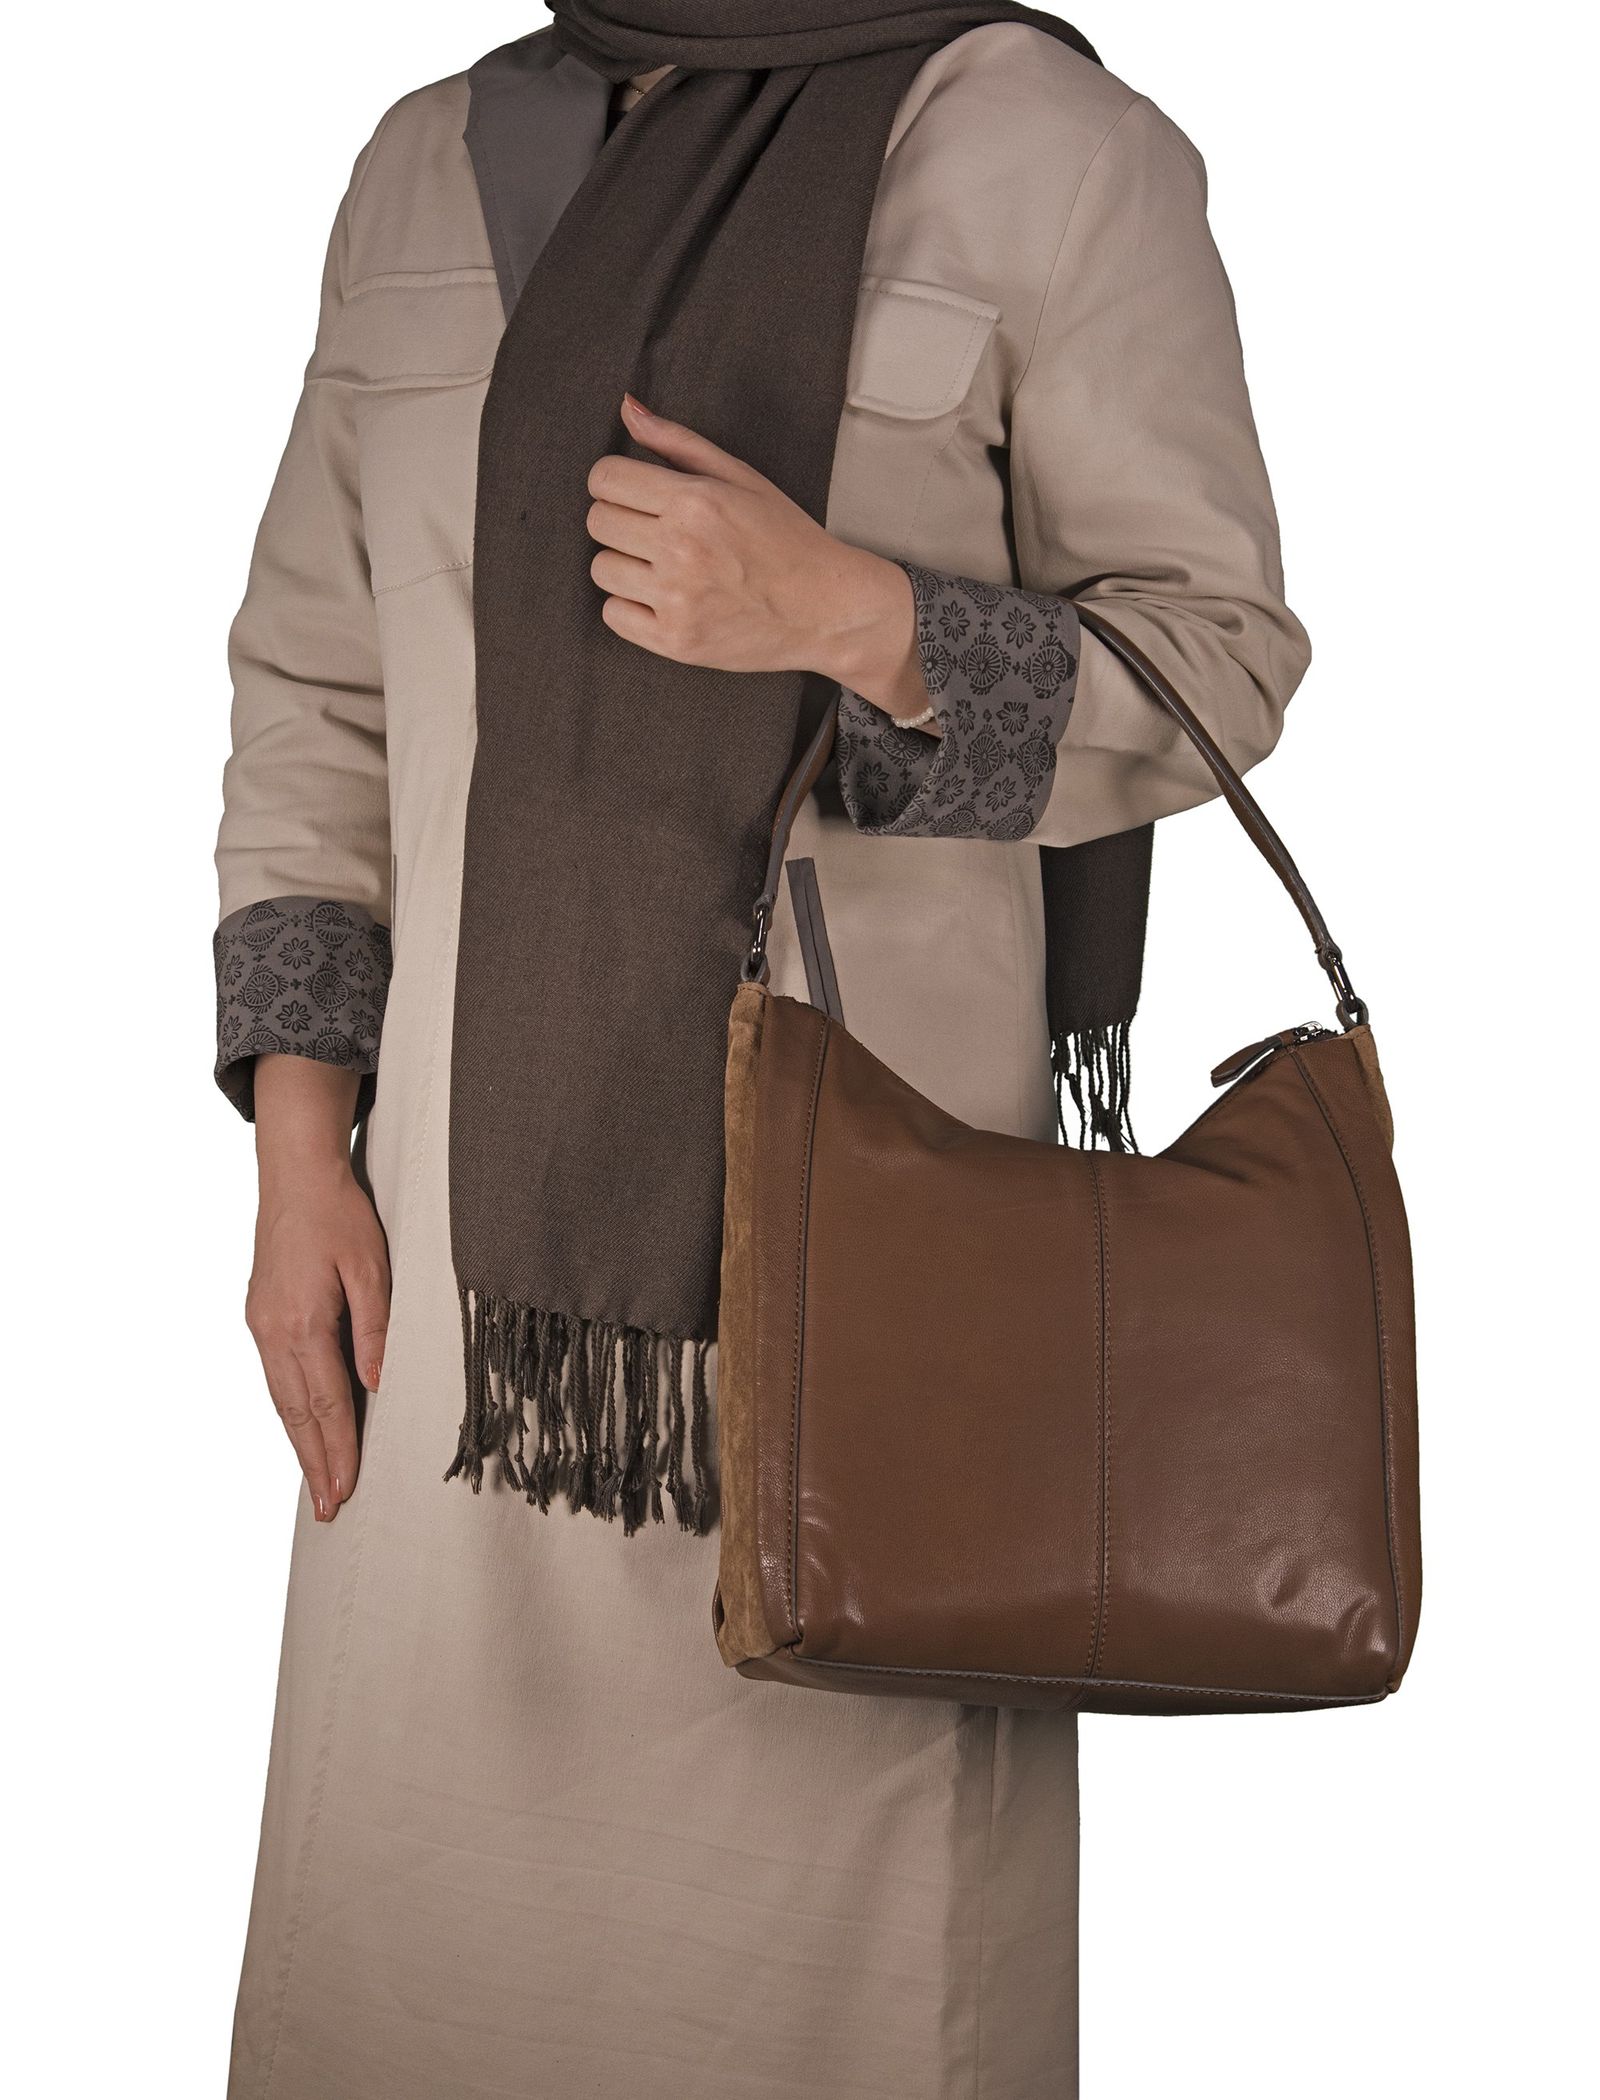 کیف دوشی چرمی زنانه - باتا - قهوه اي روشن - 7